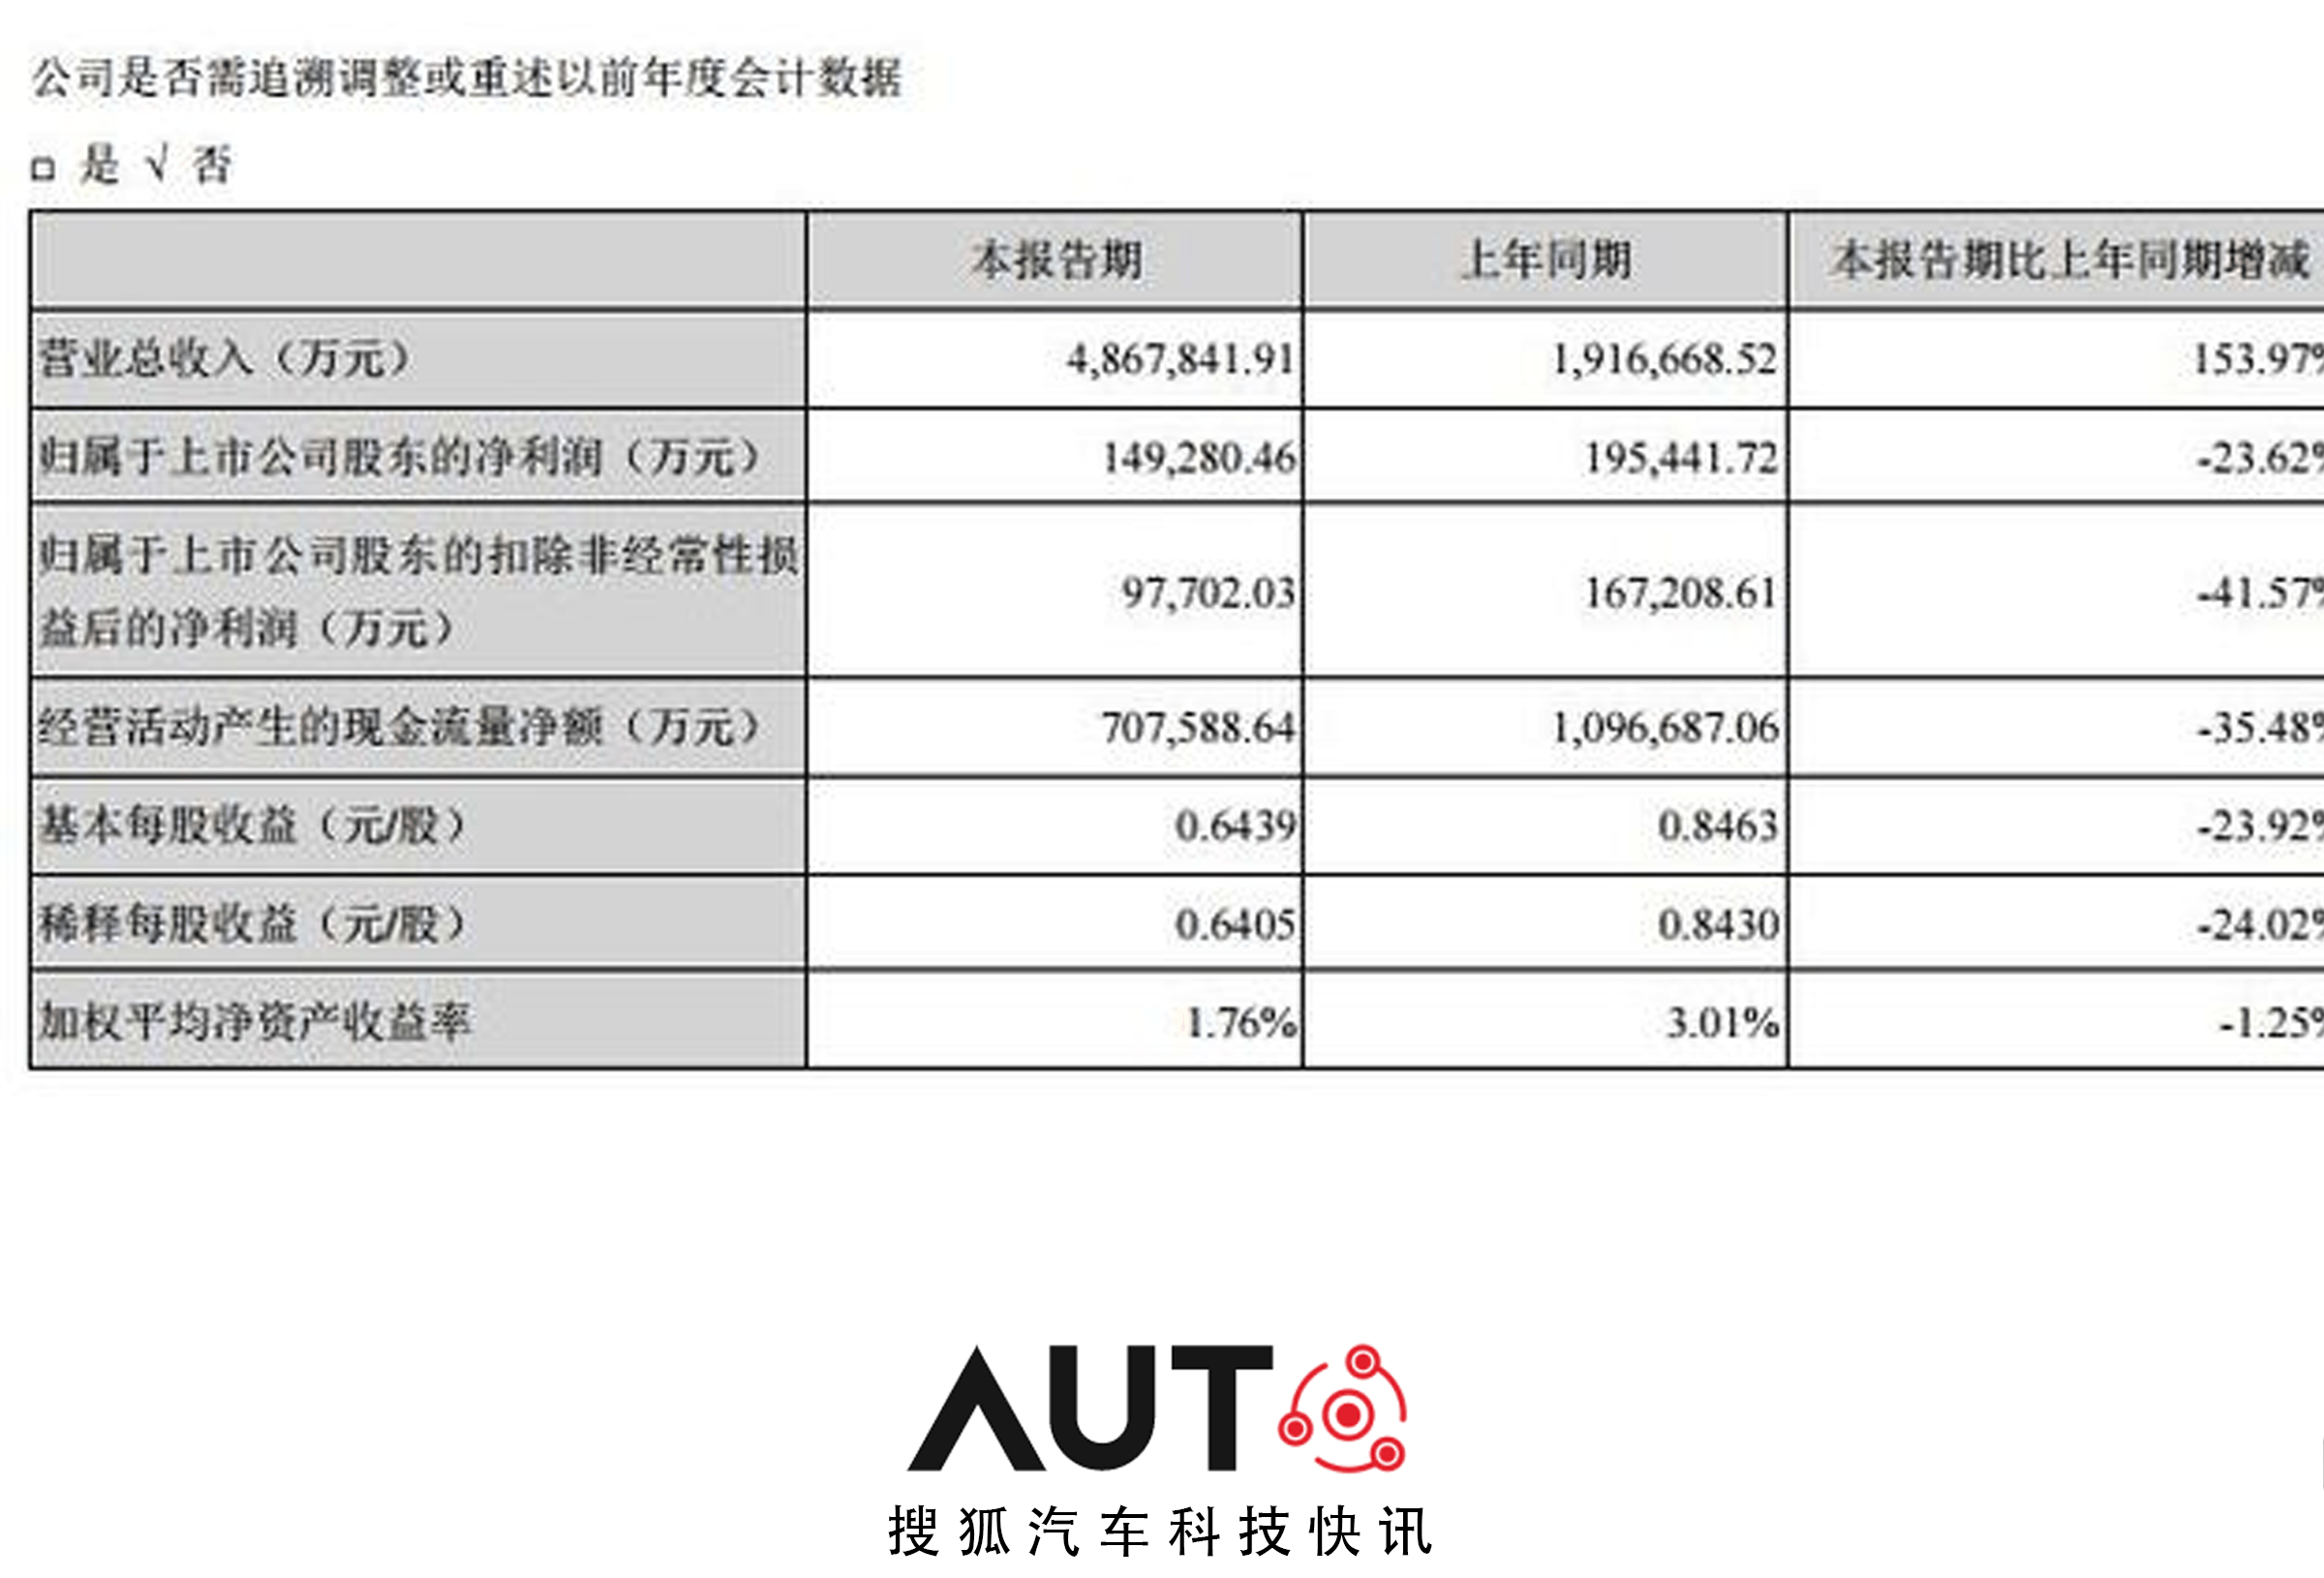 搜狐汽车科技快讯丨宁德时代一季度净利润14.93亿元 同比下降23.62%